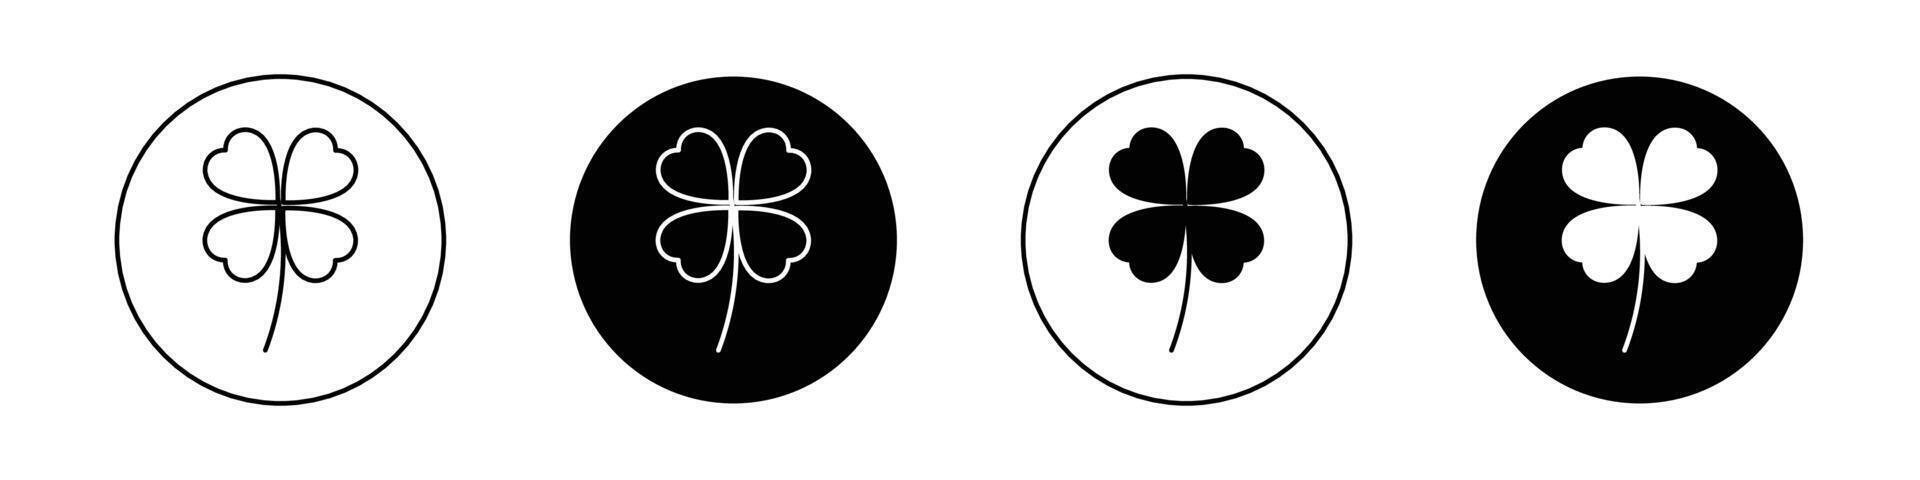 Four leaf clover icon vector